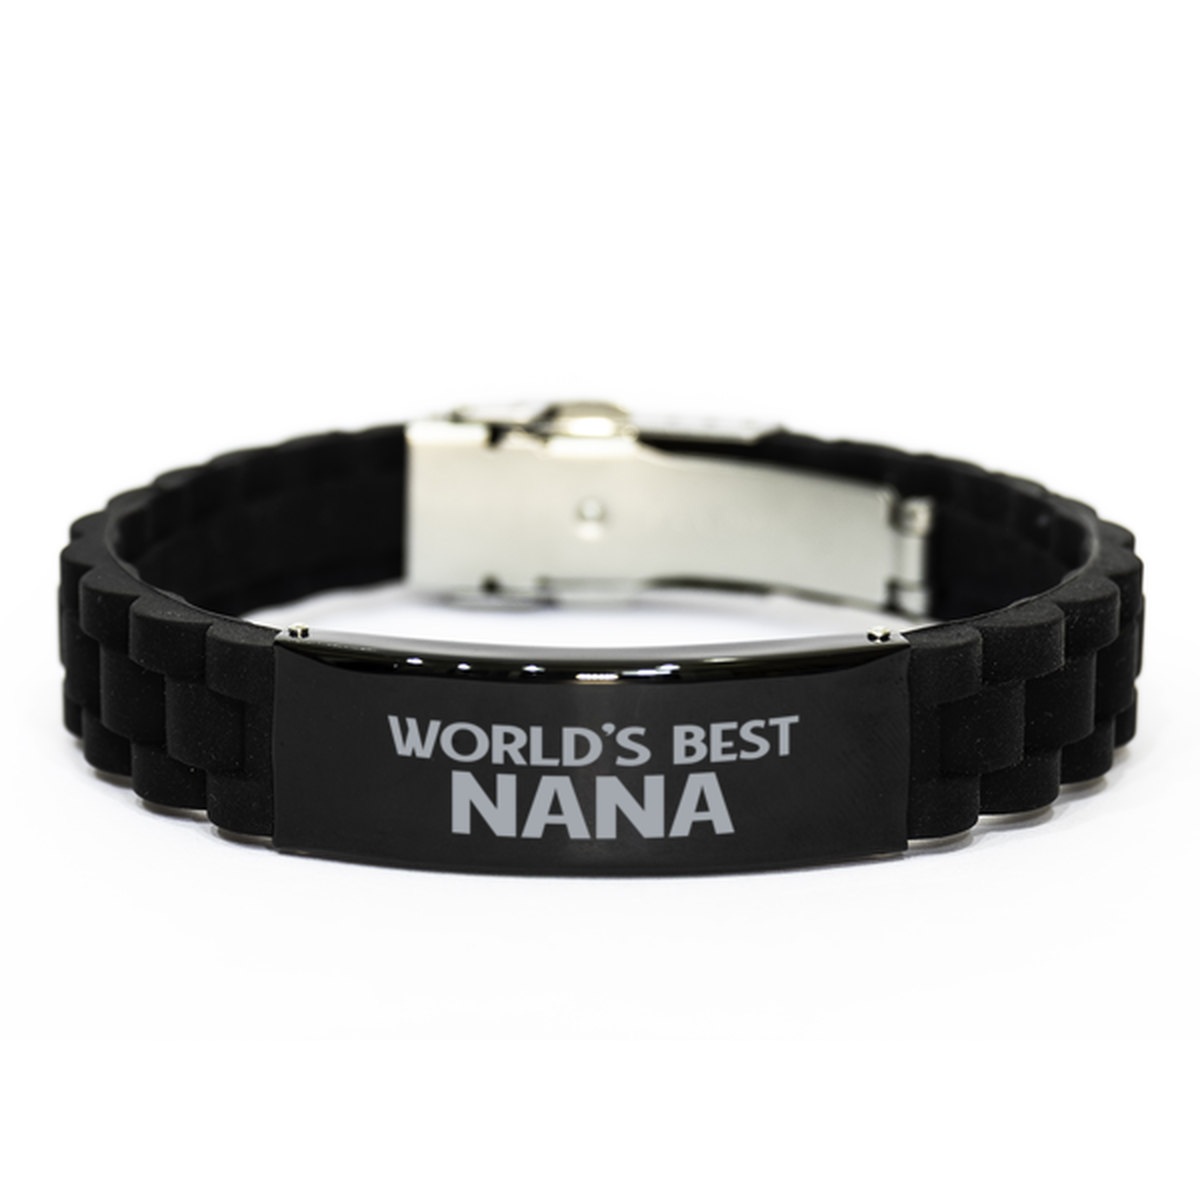 World's Best Nana Gifts, Funny Black Engraved Bracelet For Nana, Family Gifts For Women